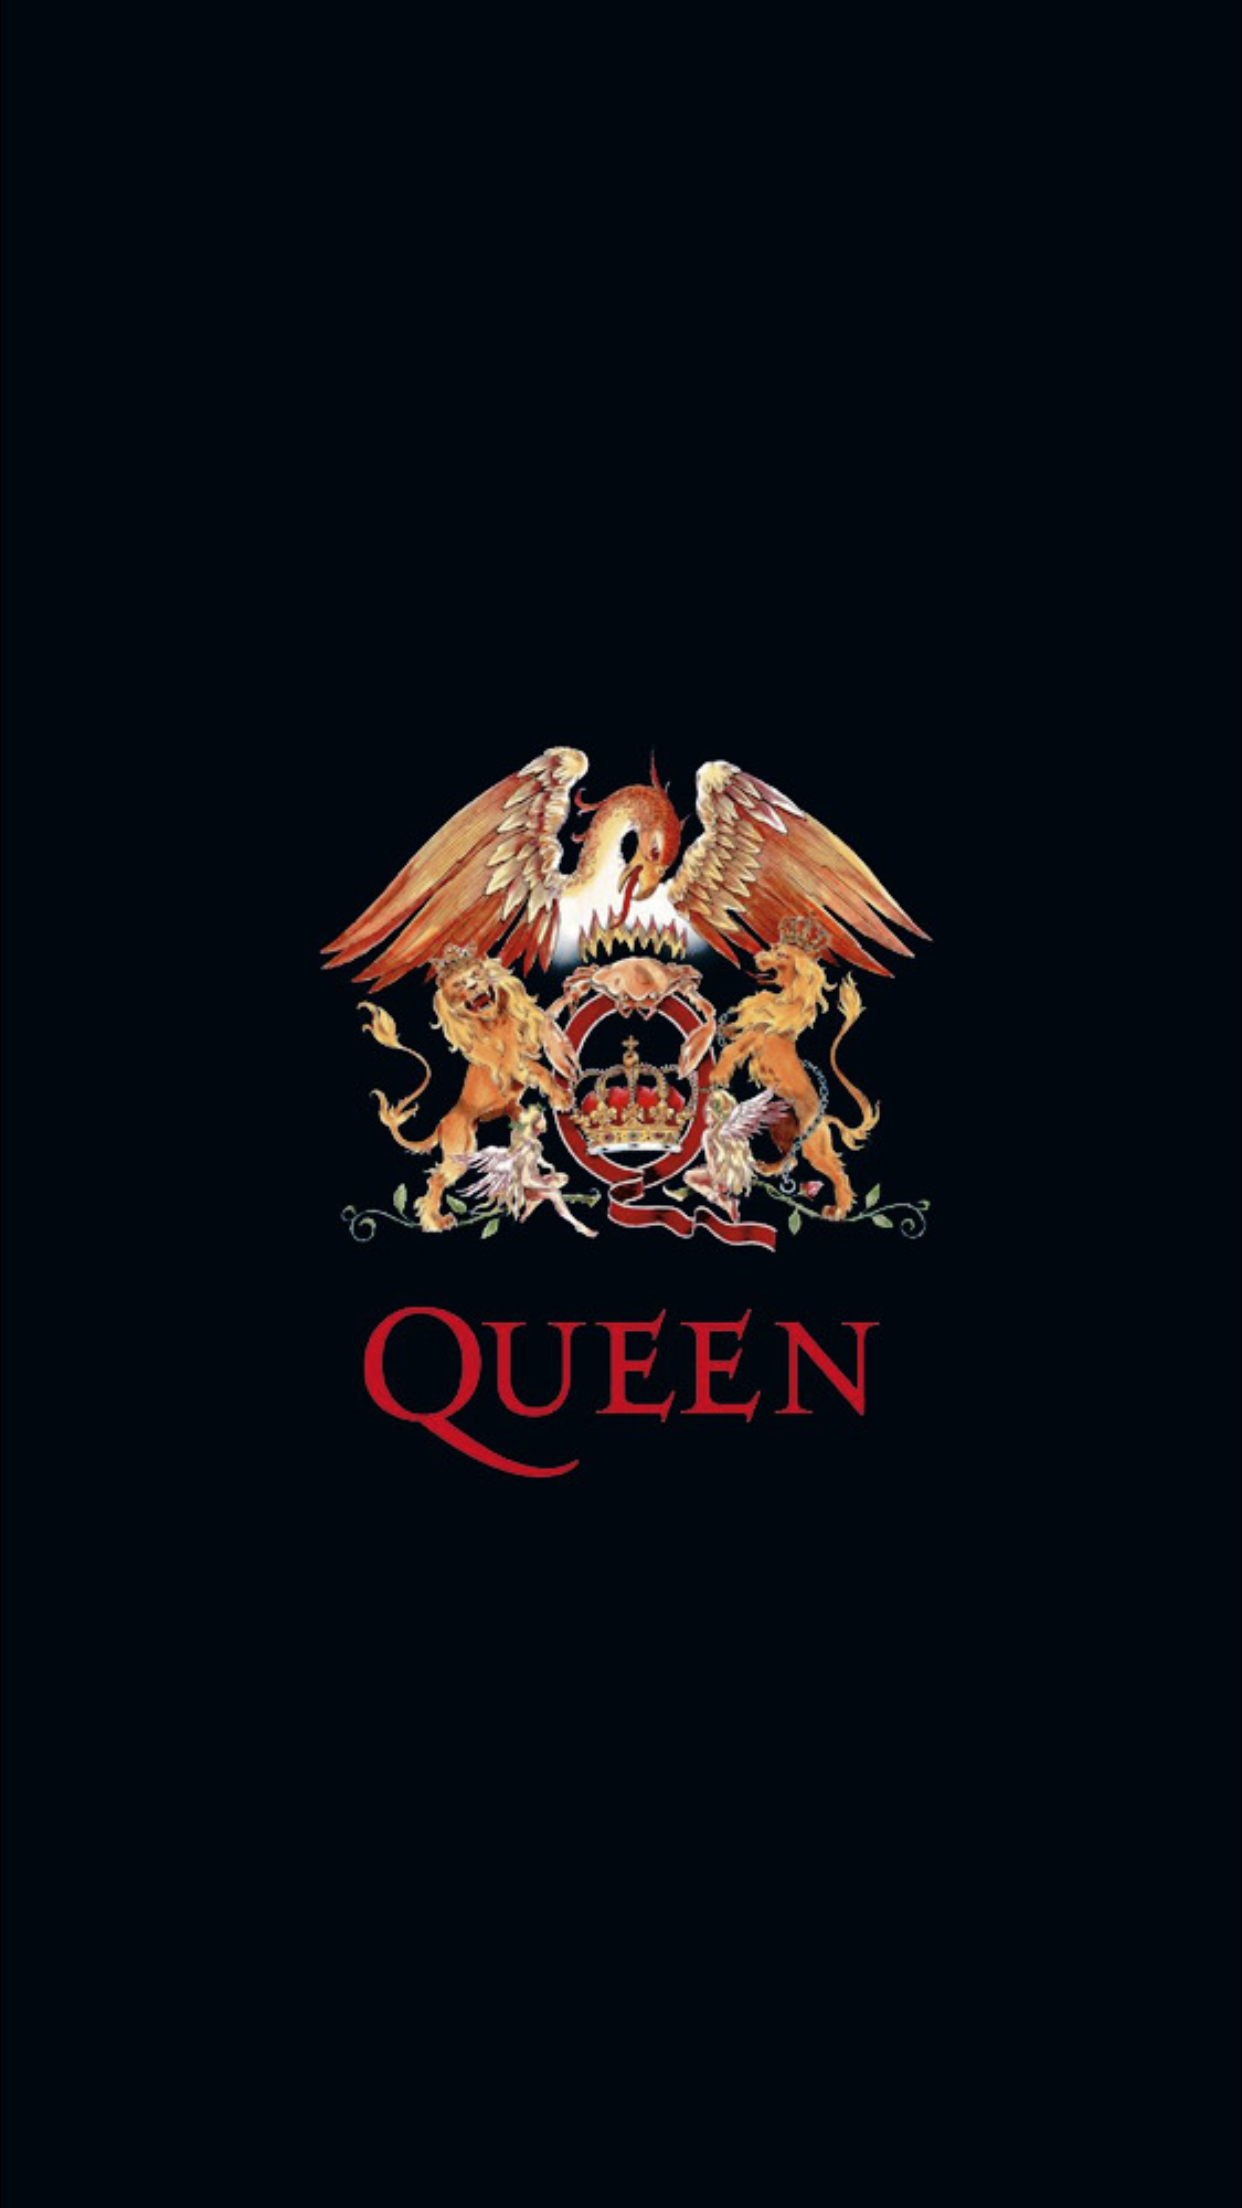 Chuyển đến WallpaperDog để khám phá hàng loạt hình nền Queen rực rỡ và đầy sáng tạo. Những bức ảnh này sẽ giúp bạn có một giao diện độc đáo và thú vị cho thiết bị của mình. Với độ phân giải cao và chọn lọc kỹ lưỡng từ WallpaperDog, đây là một tài nguyên không thể thiếu đối với những người yêu nhạc rock và Queen!